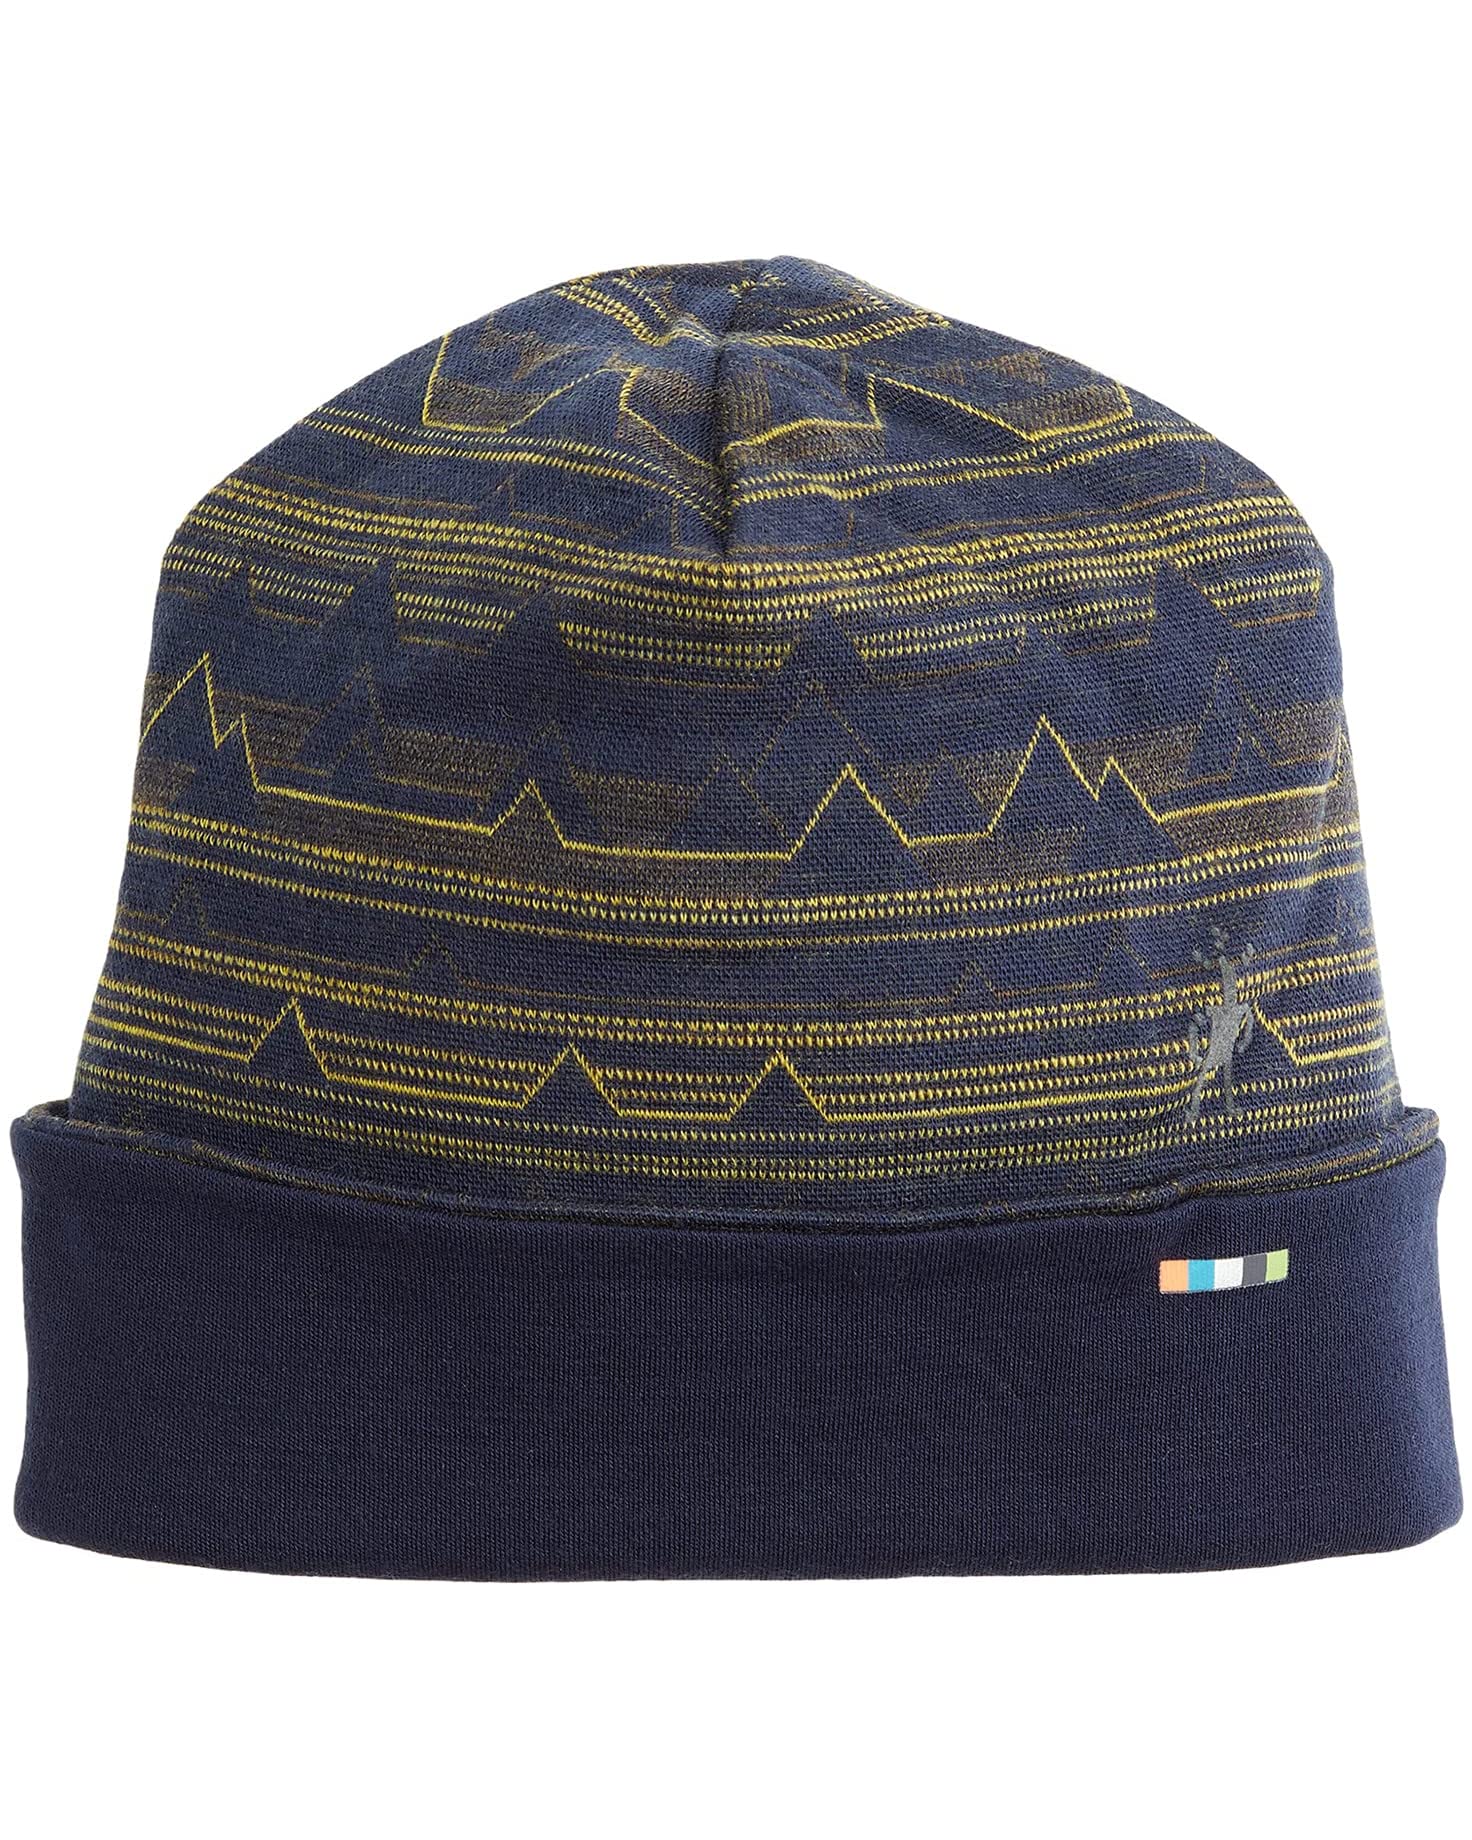 Los 10 sombreros de invierno más empacables, elegantes y más cálidos - 17